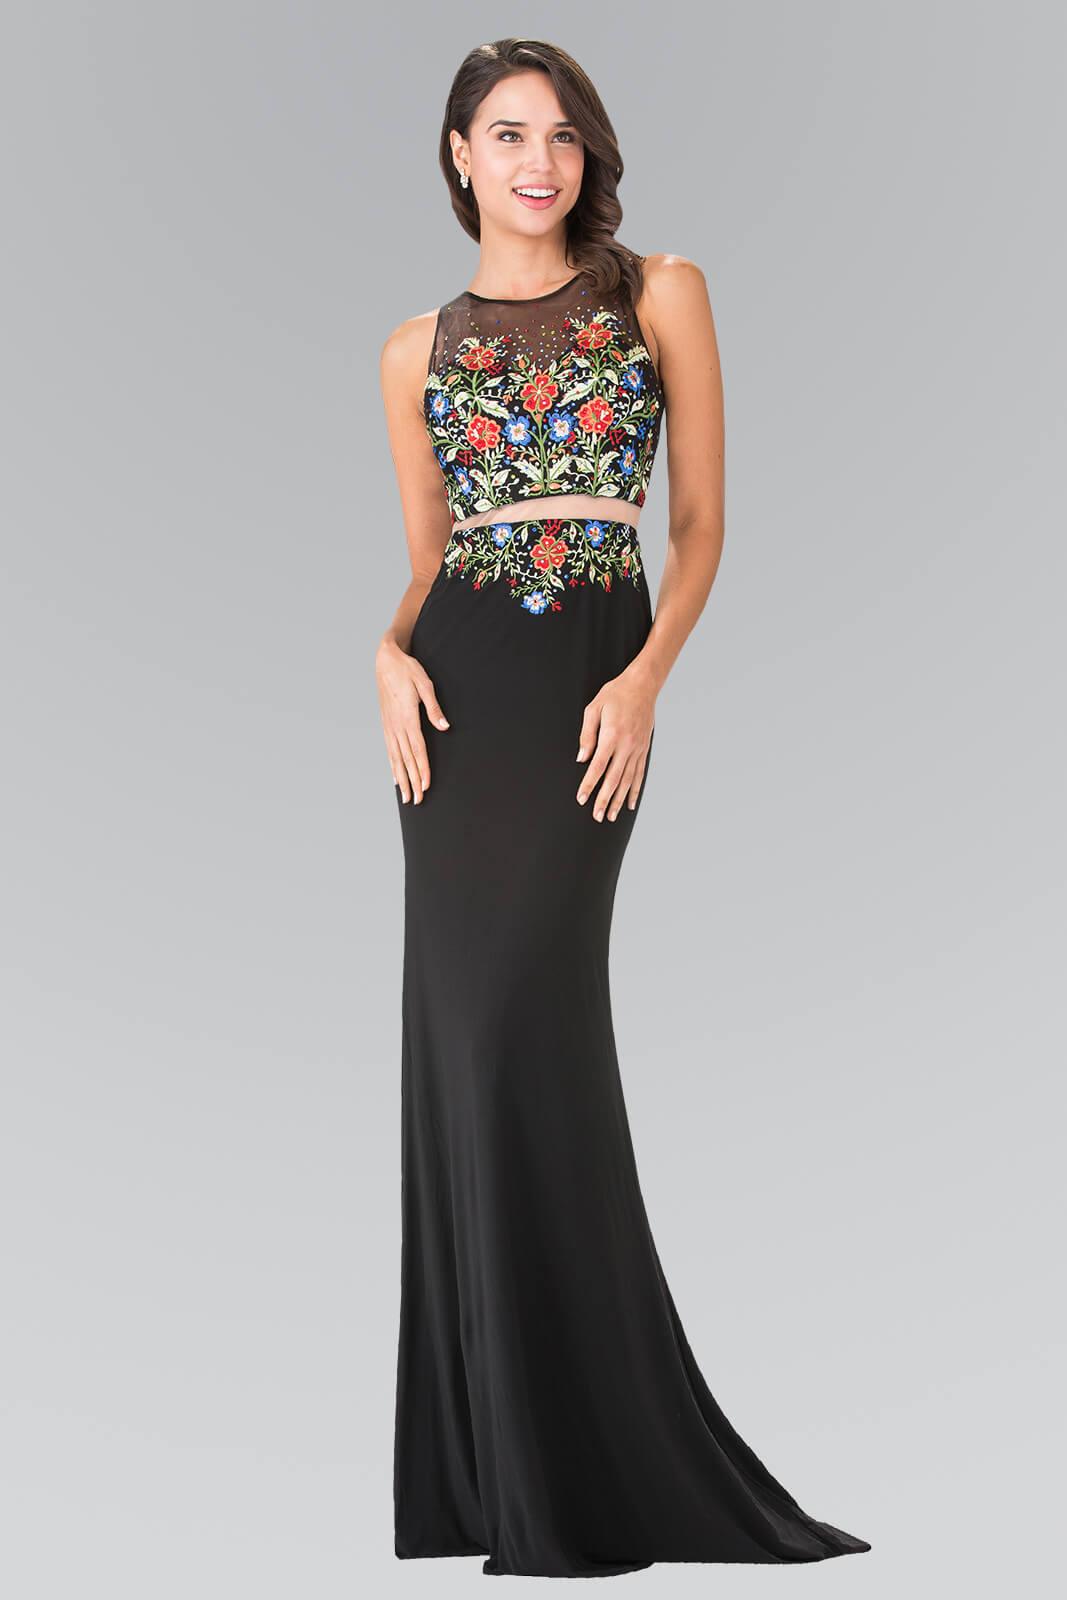 Prom Long Dress Evening Formal Gown - The Dress Outlet Elizabeth K